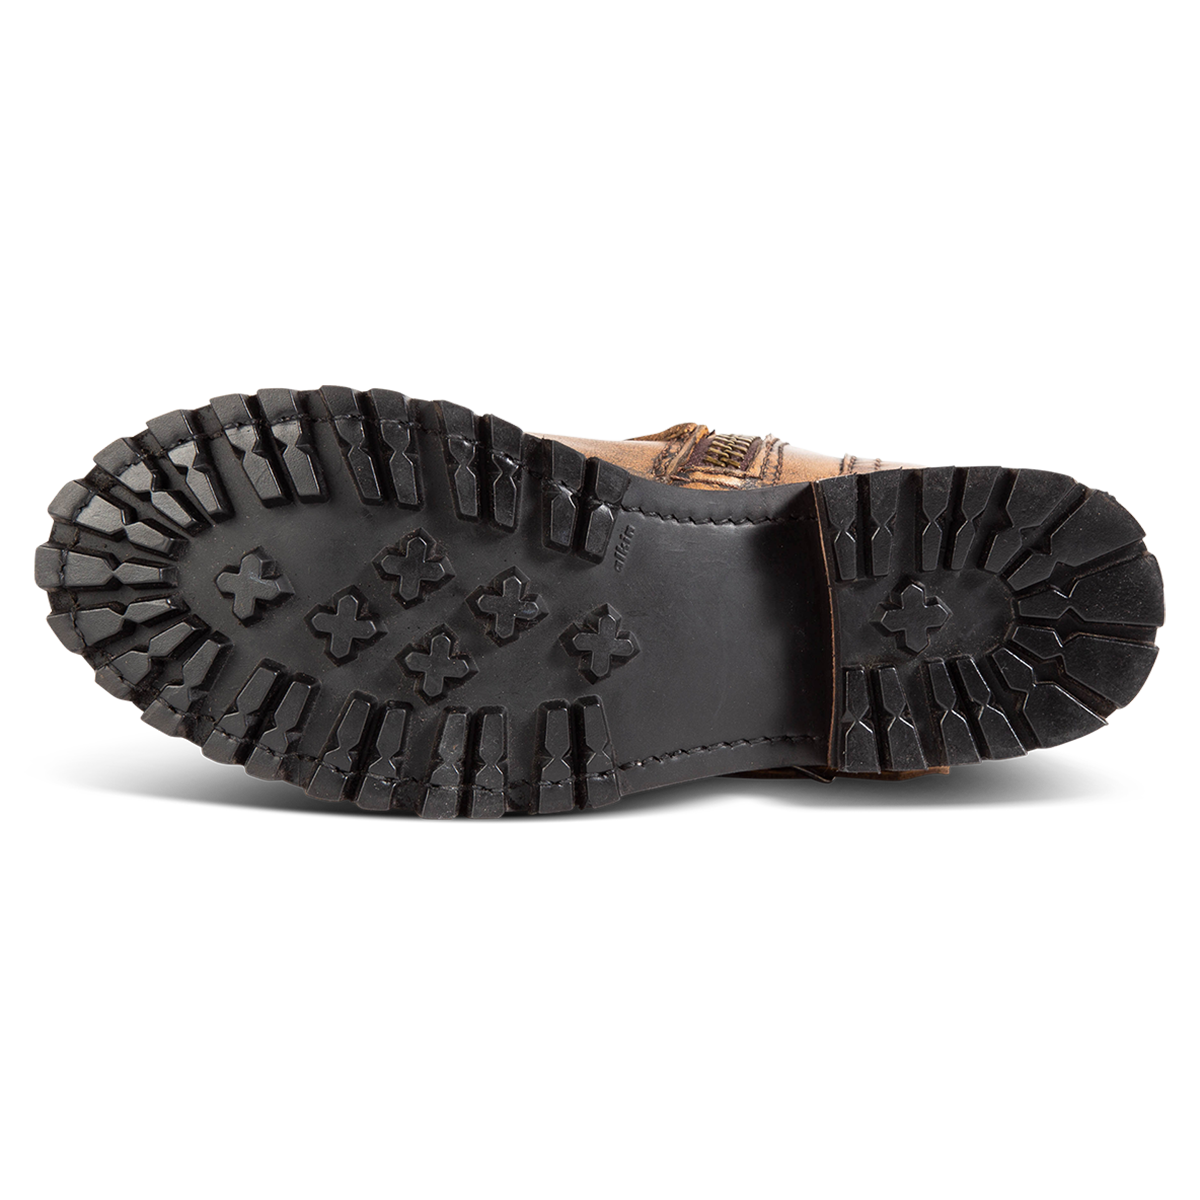 Rubber tread sole on women's FREEBIRD Harley bronze ankle boot